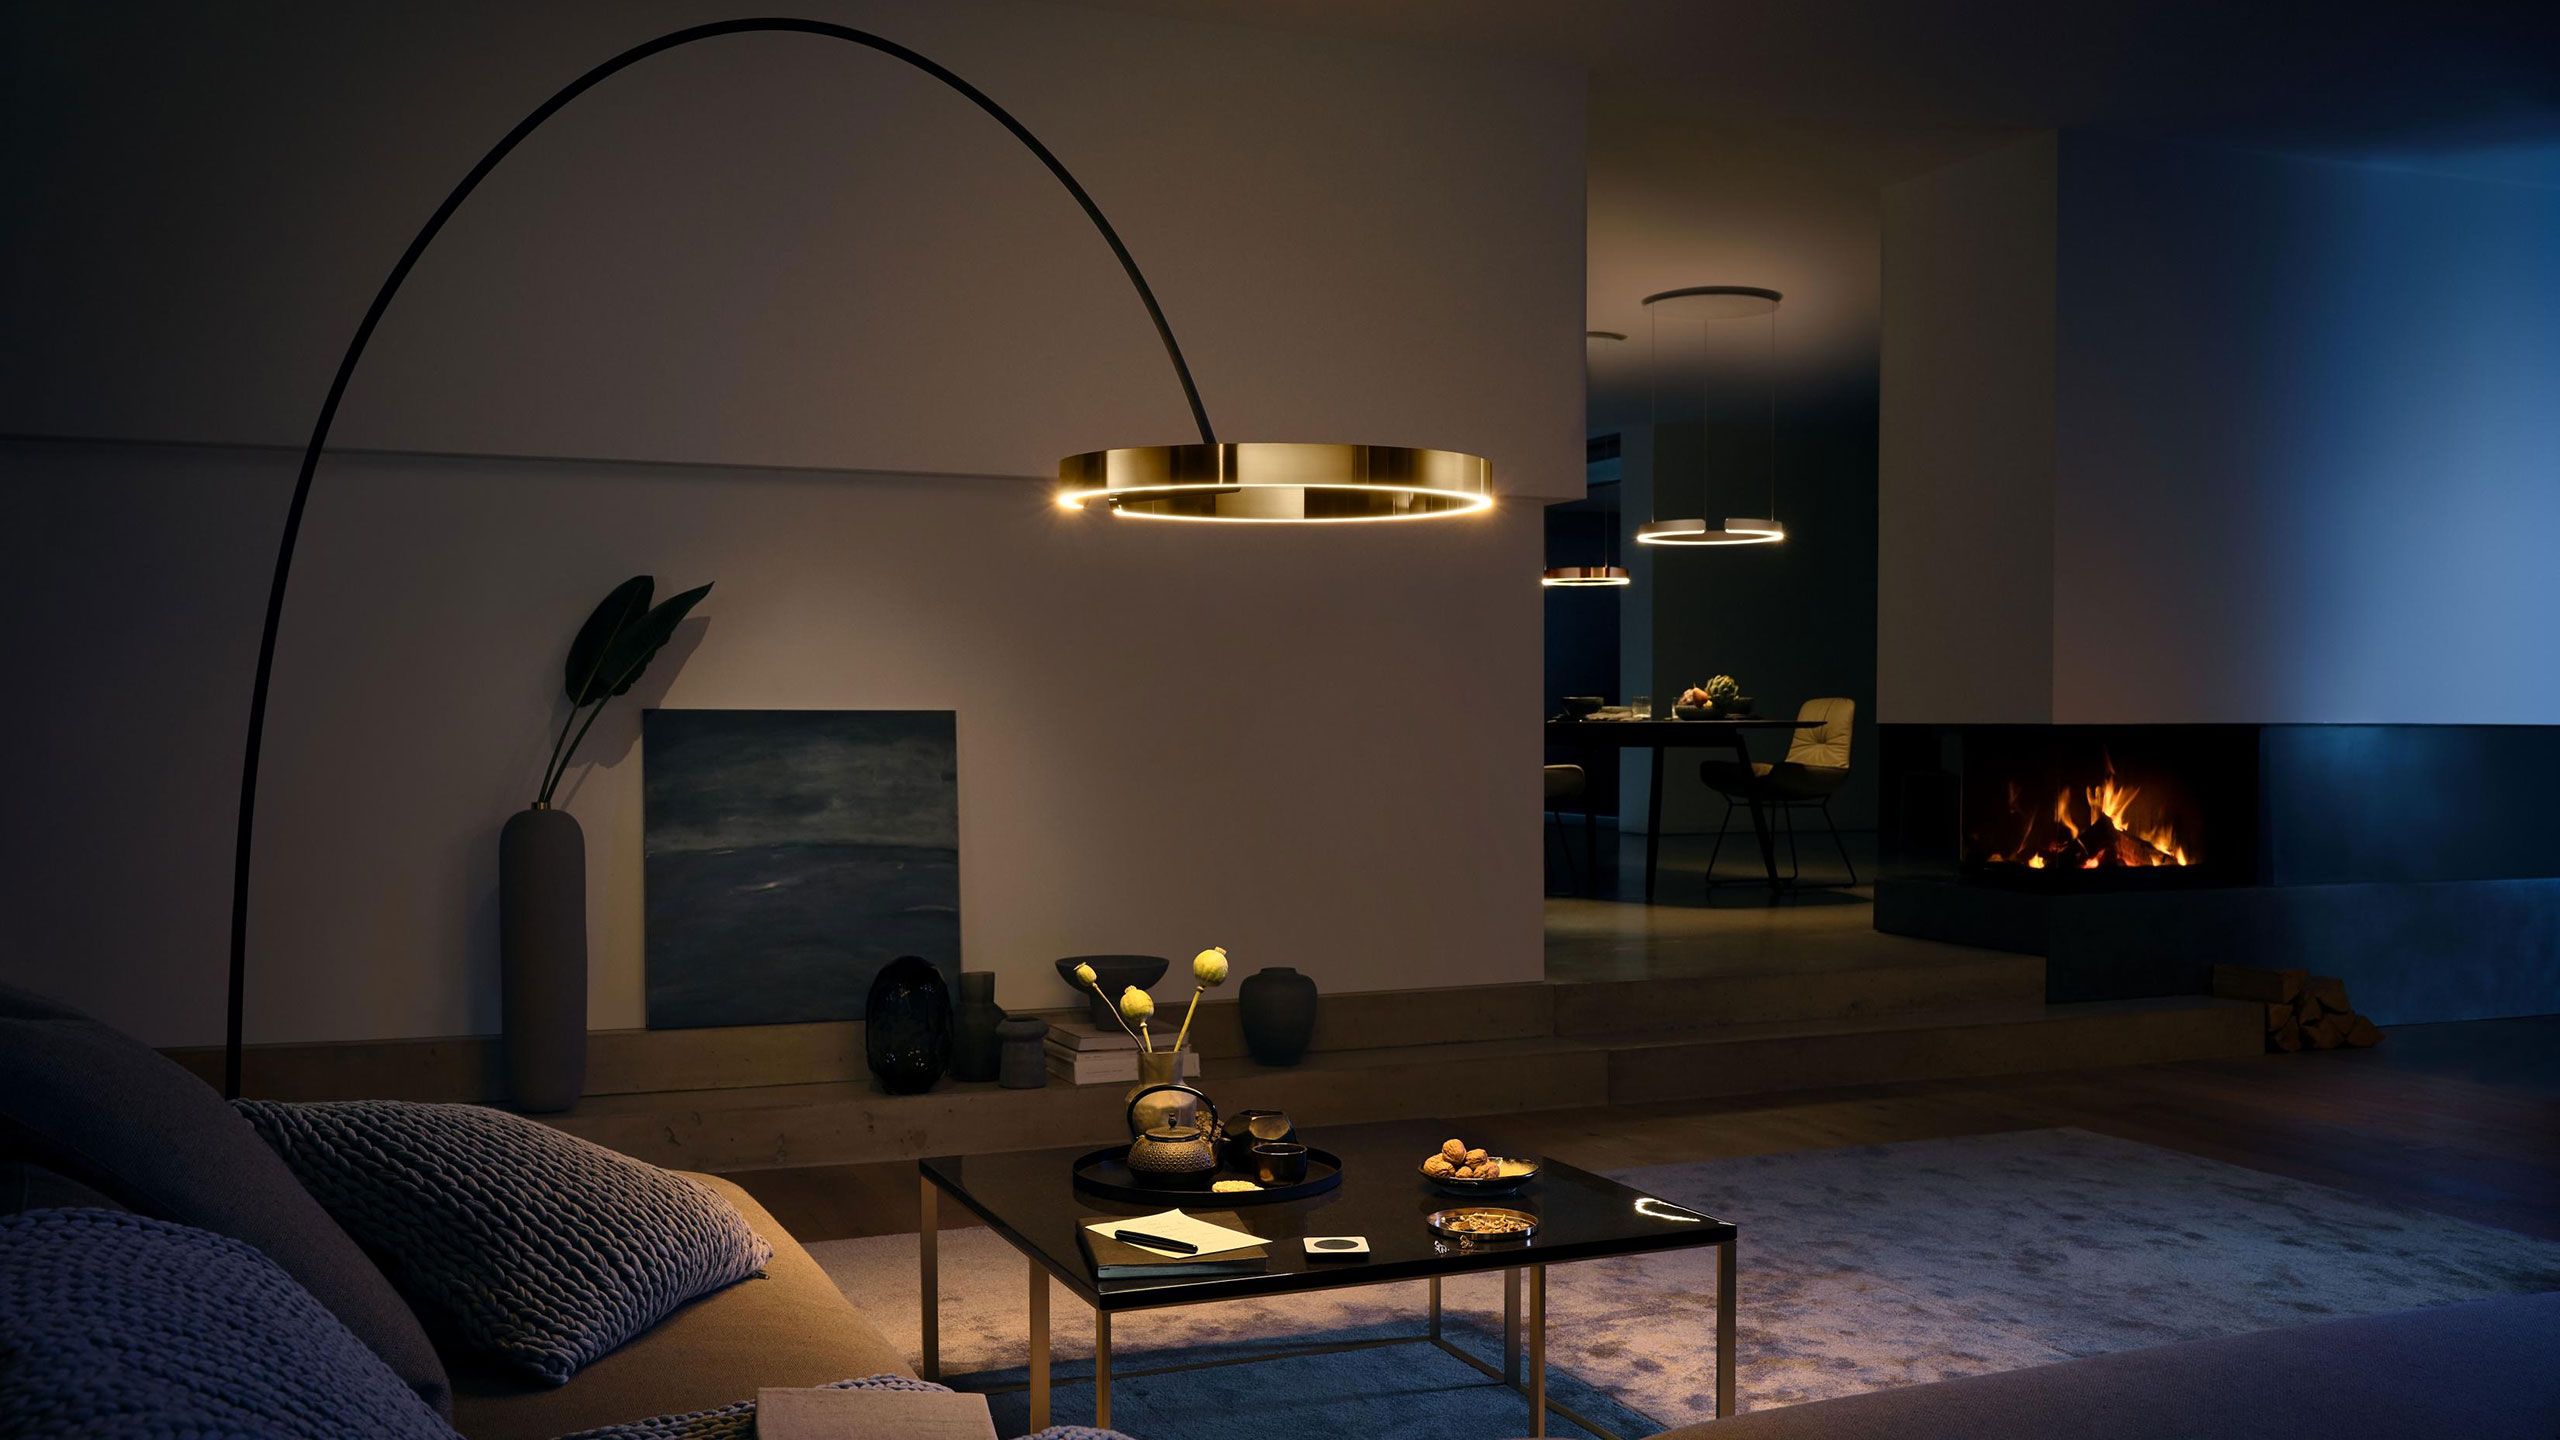 Professionell beleuchtetes Wohnzimmer mit Occhio-Leuchte